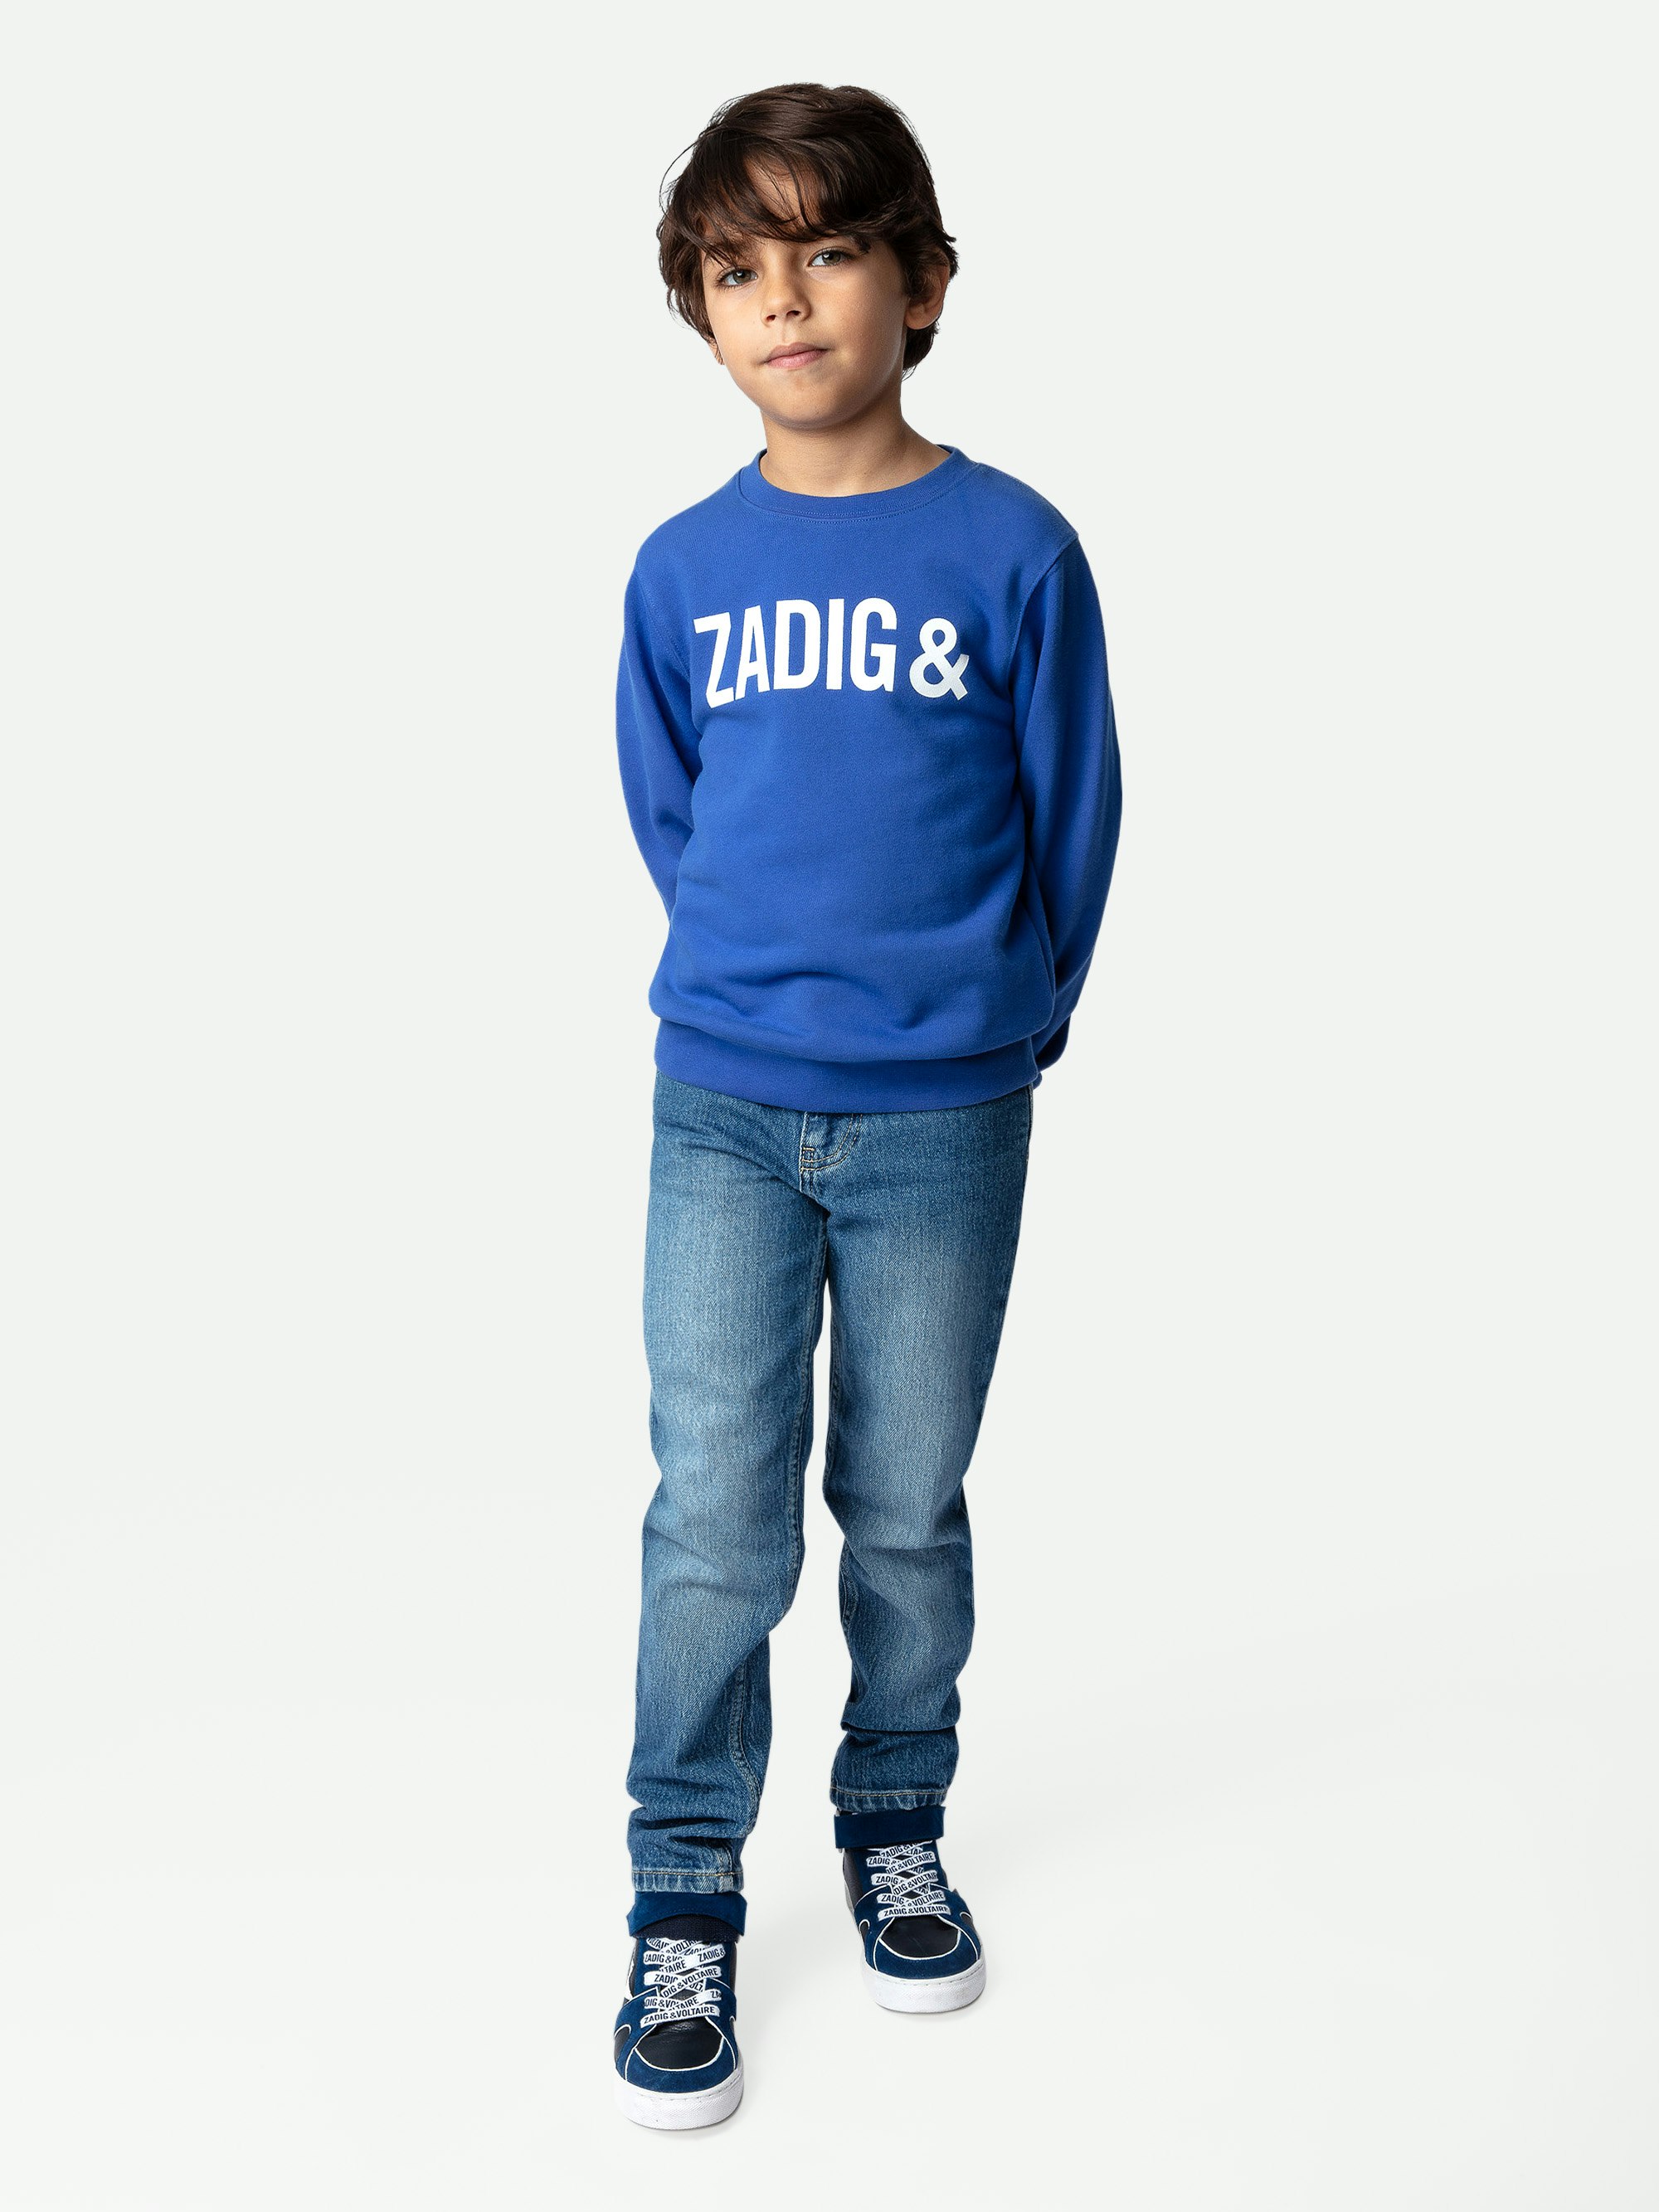 Simba Boys’ Sweatshirt - Boys’ blue cotton fleece sweatshirt with logo on the front and back.